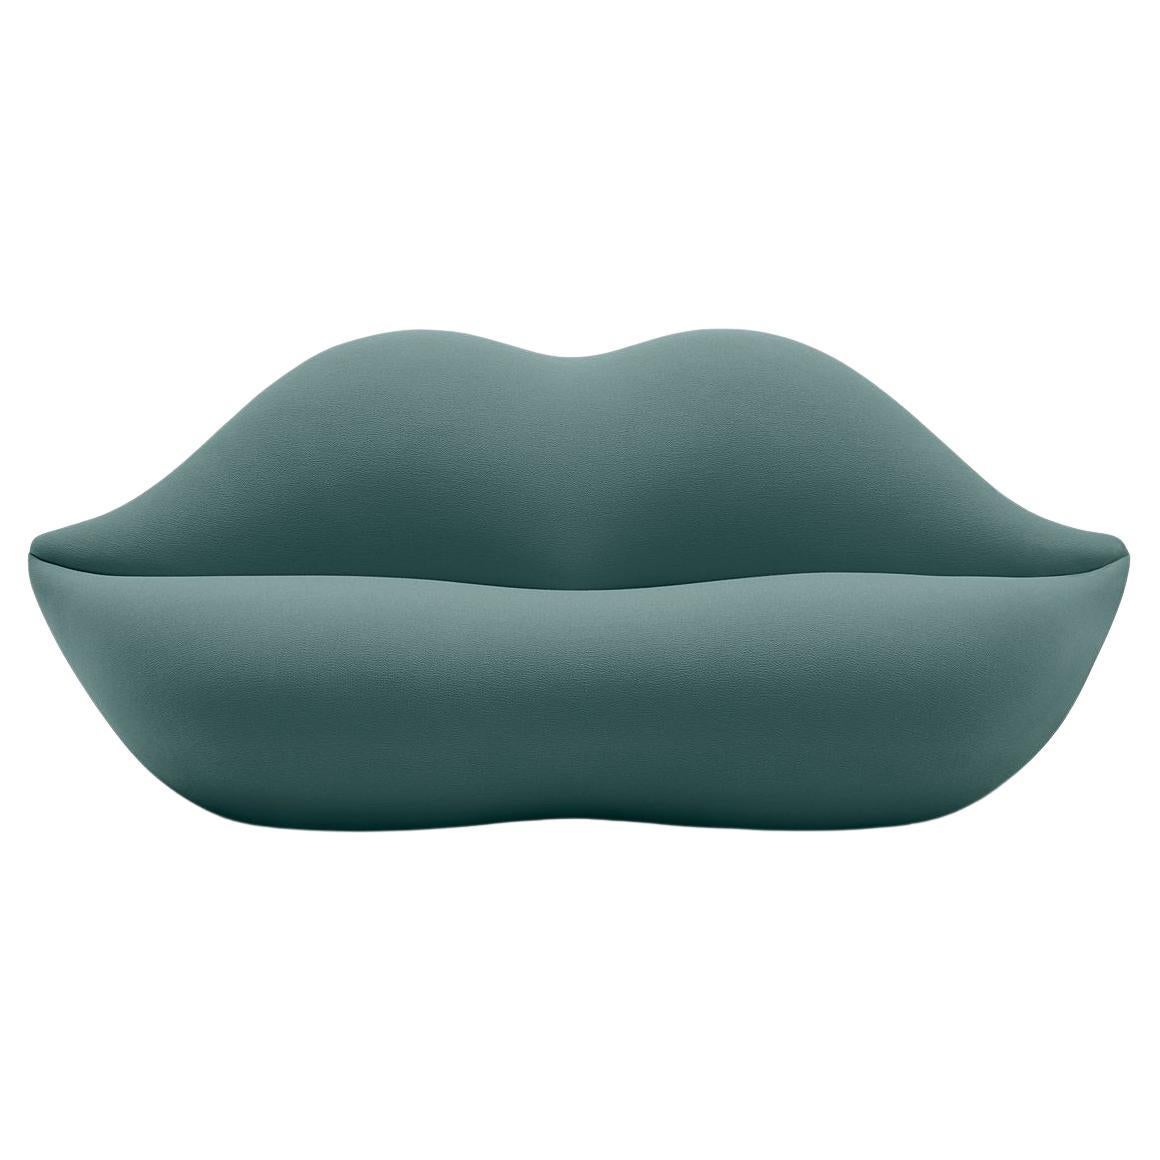 Gufram, canapé Bocca en forme de lèvre, Artic, par Studio 65